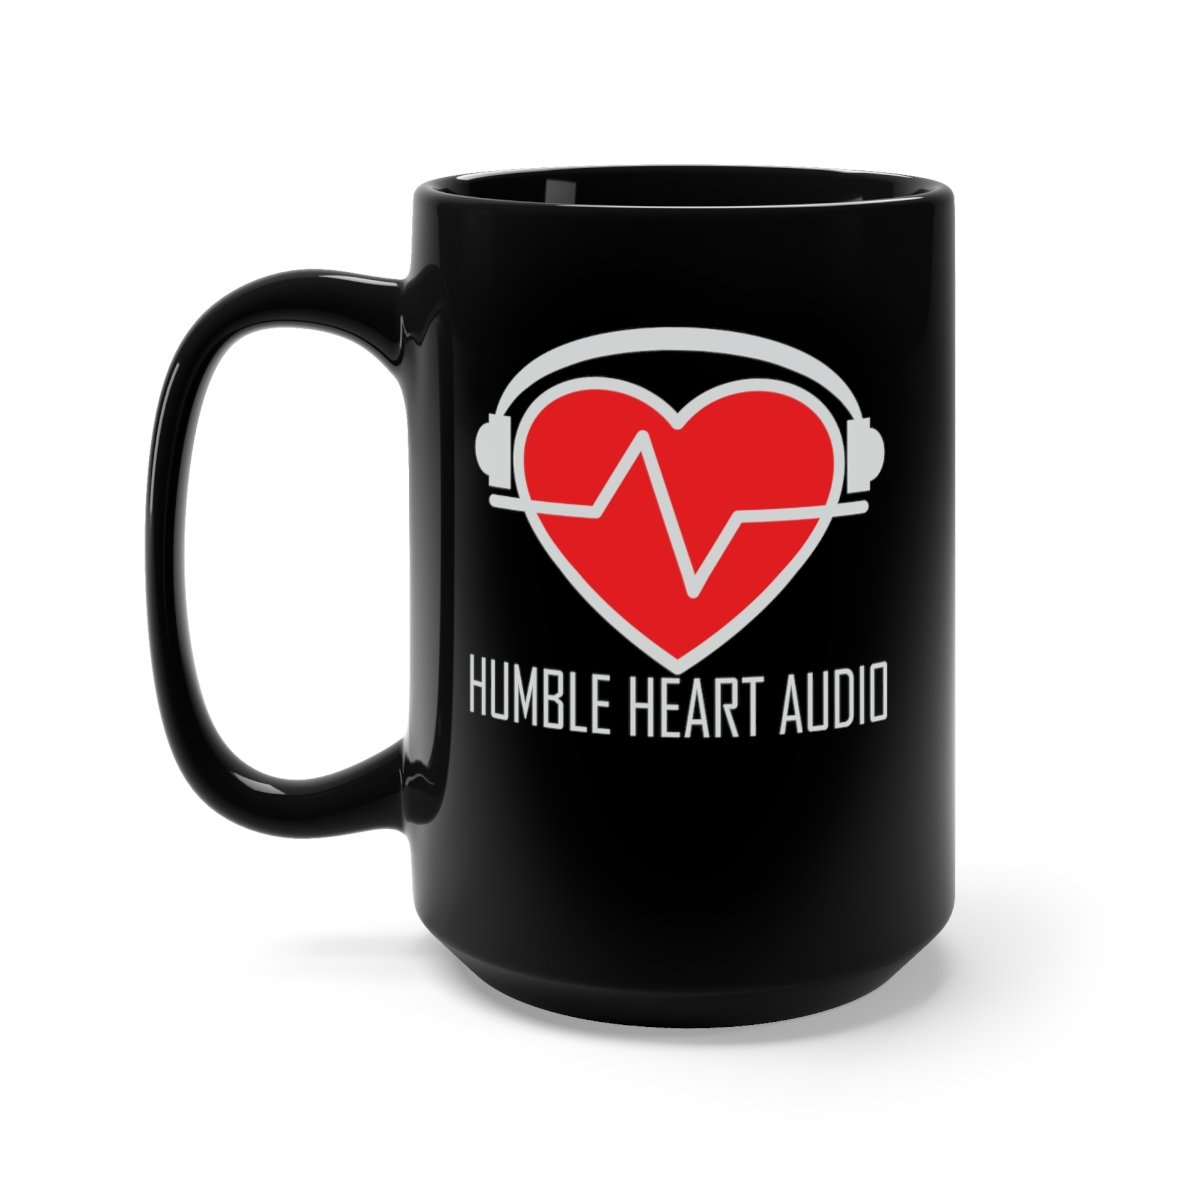 Humble Heart Audio Black Mug 15oz